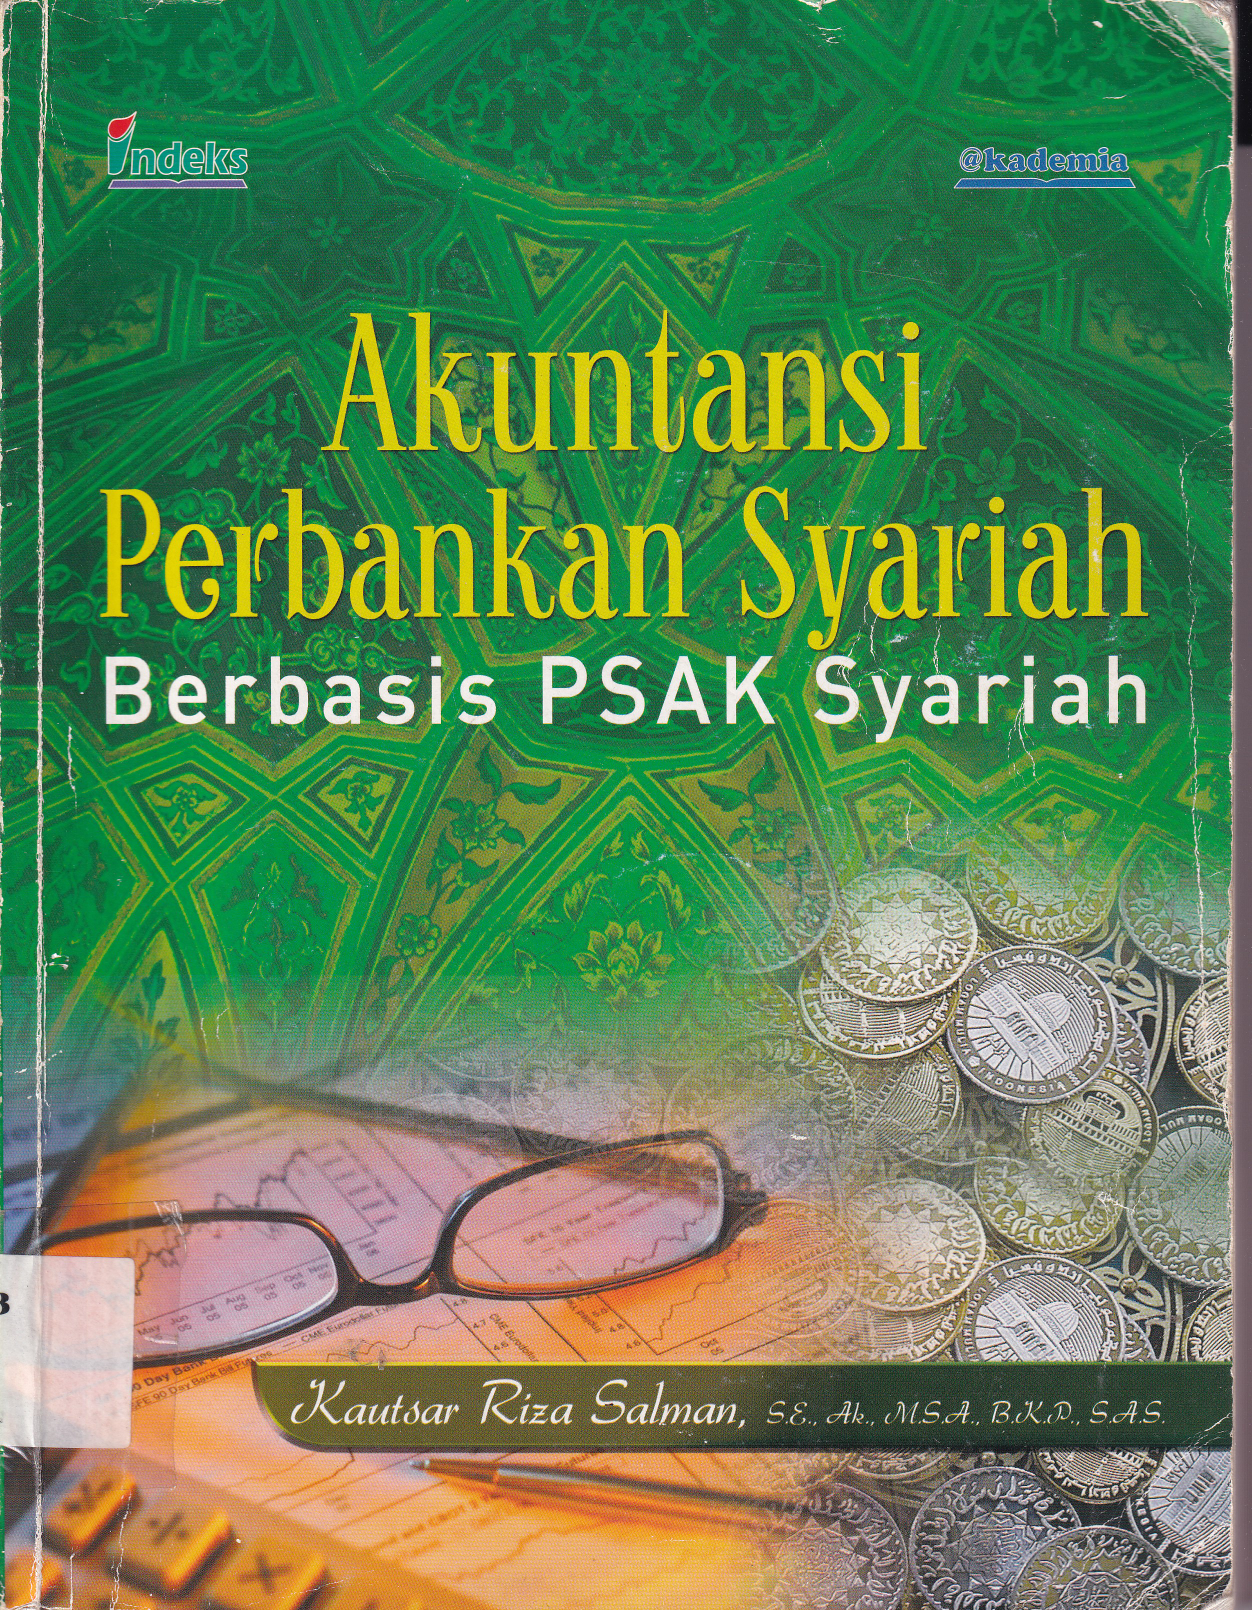 Akuntansi Perbankan syariah Berbasis PSAK Syariah